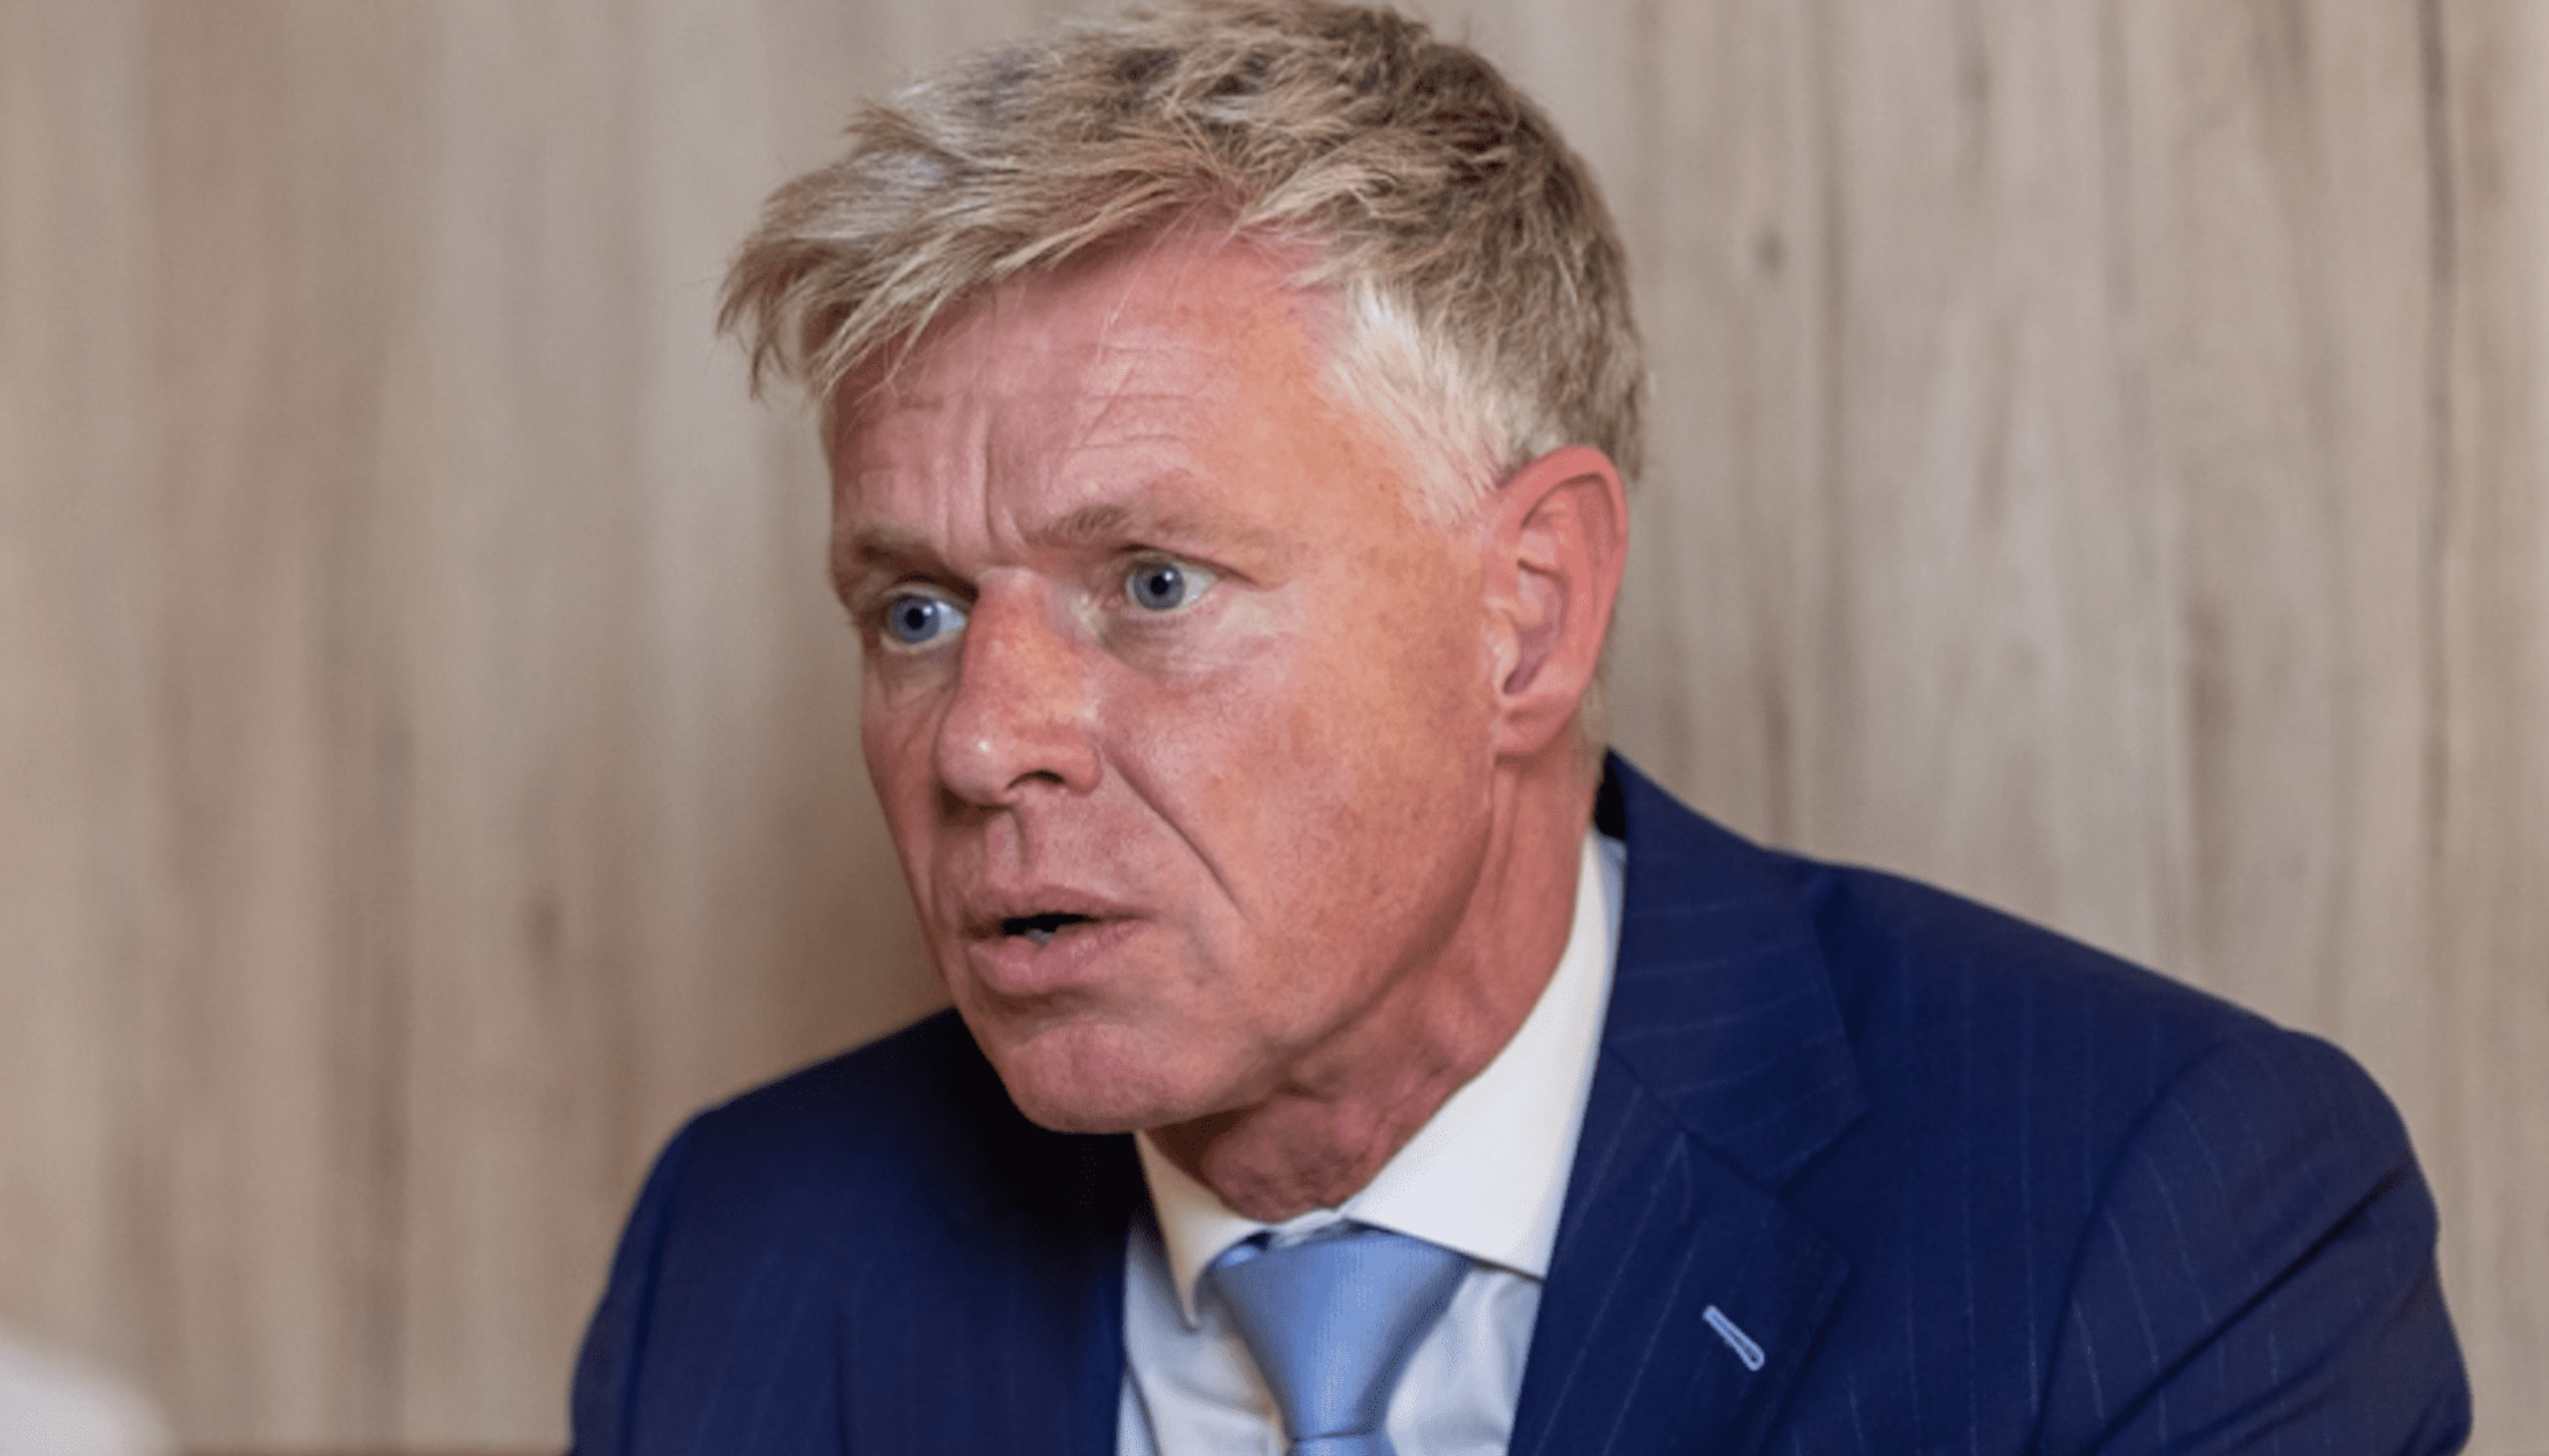 Enteignungsplänen der Regierung: Bauernfamilien „weinen jeden Tag am Küchentisch“ und einige haben Selbstmord begangen, warnt der niederländische Europaabgeordnete Robert Roos